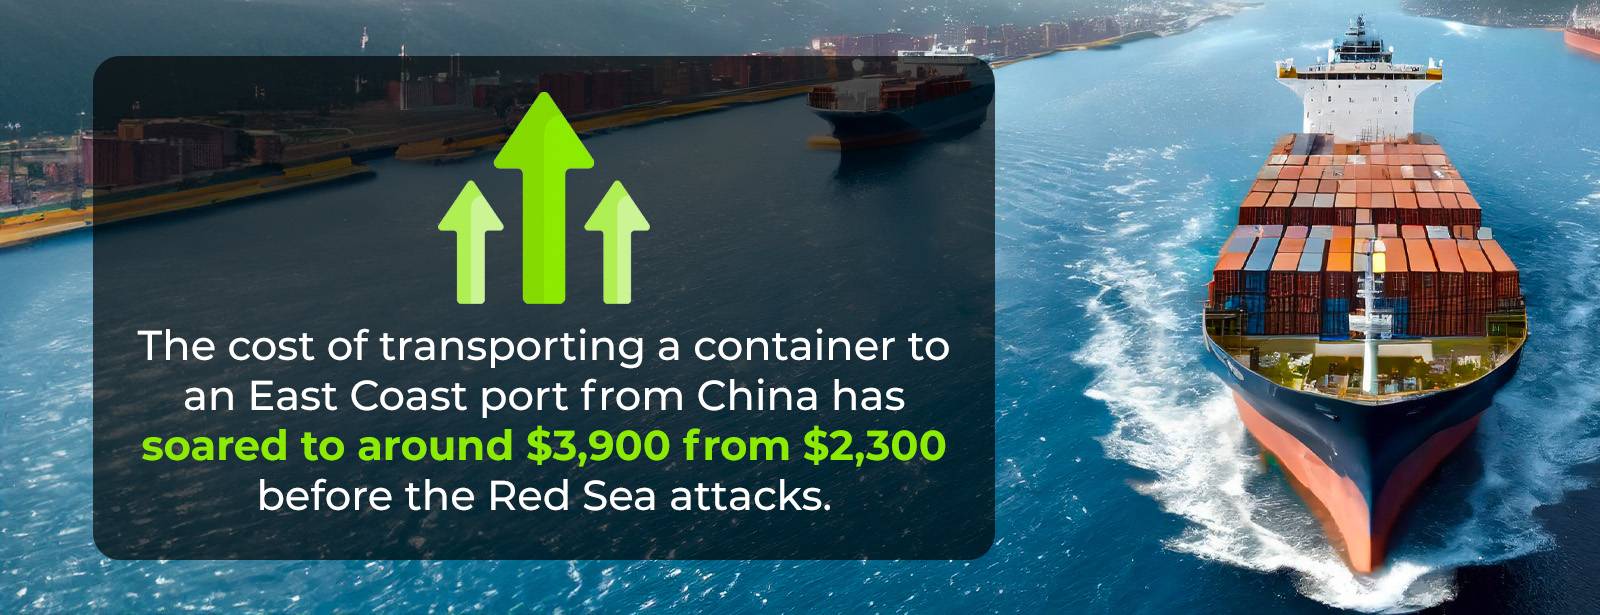 Il costo del trasporto di un container attraverso il Mar Rosso aumenta di 2 volte.